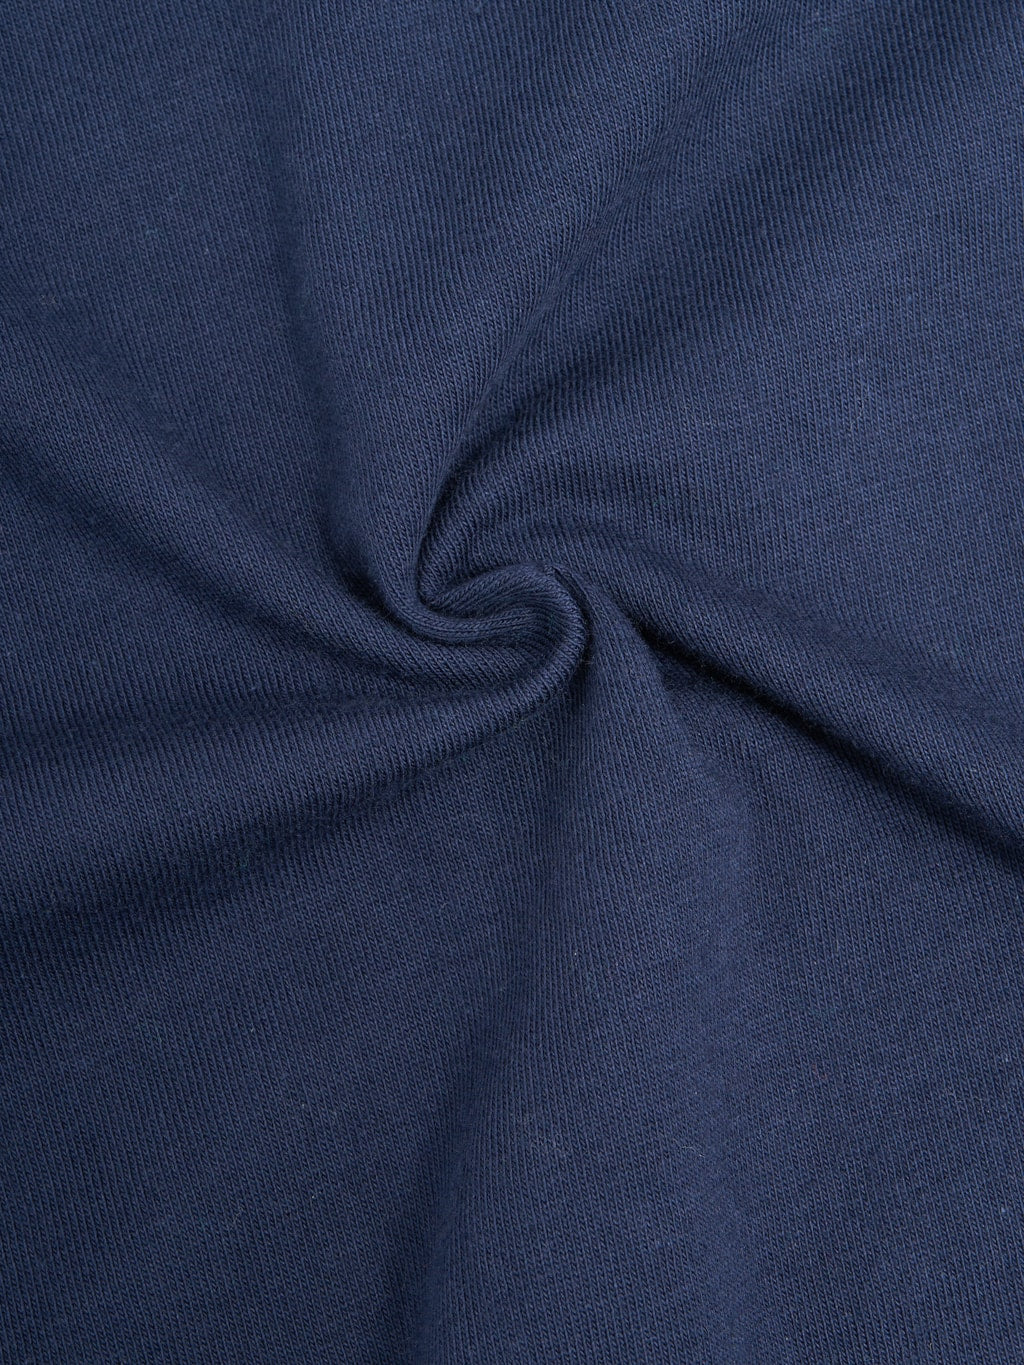 Merz b. Schwanen 1940s 5.5oz Loopwheeled Relaxed Fit T-Shirt Ink Blue